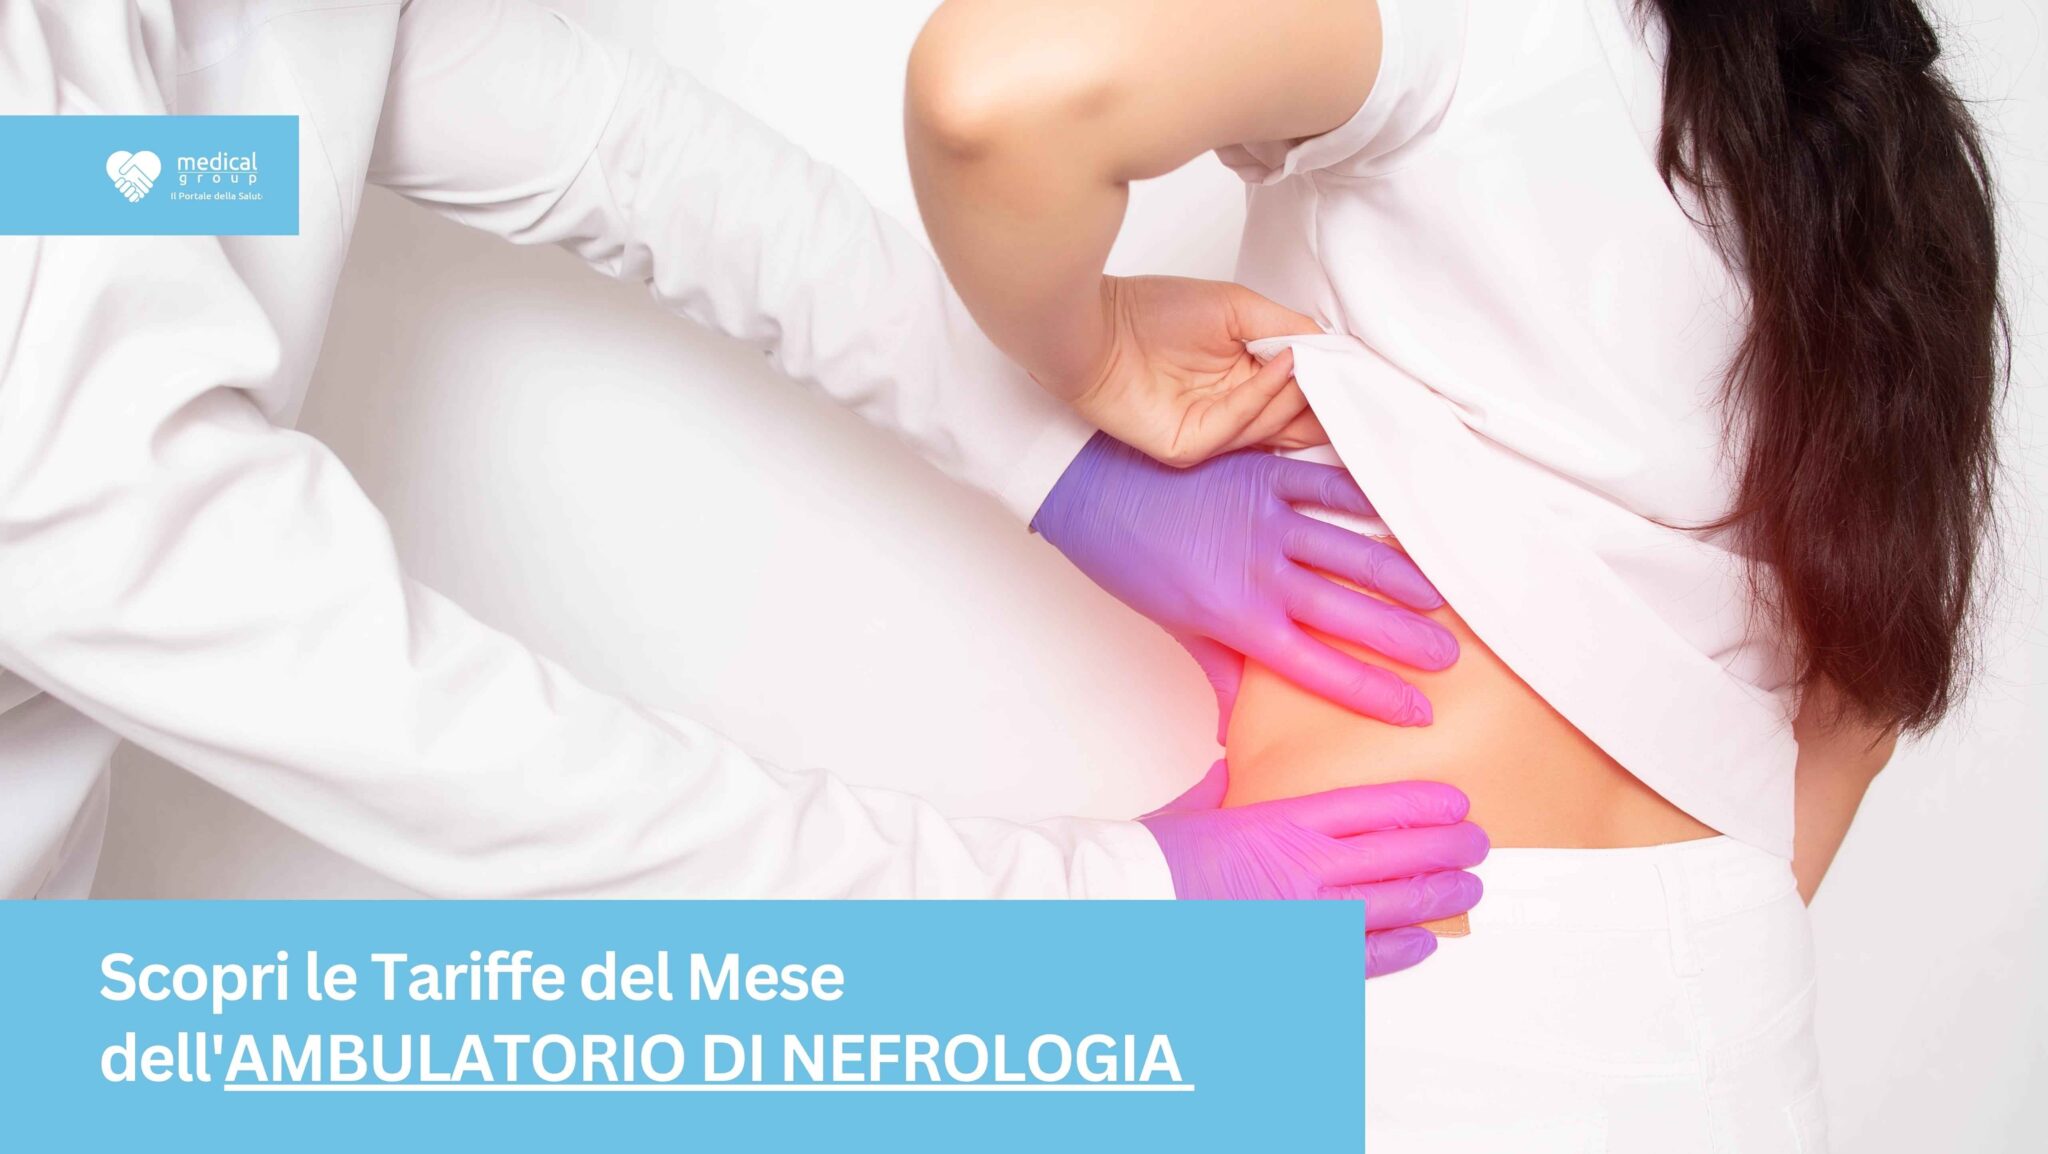 Tariffe del Mese Poliambulatorio Nefrologia F-Medical Frosinone